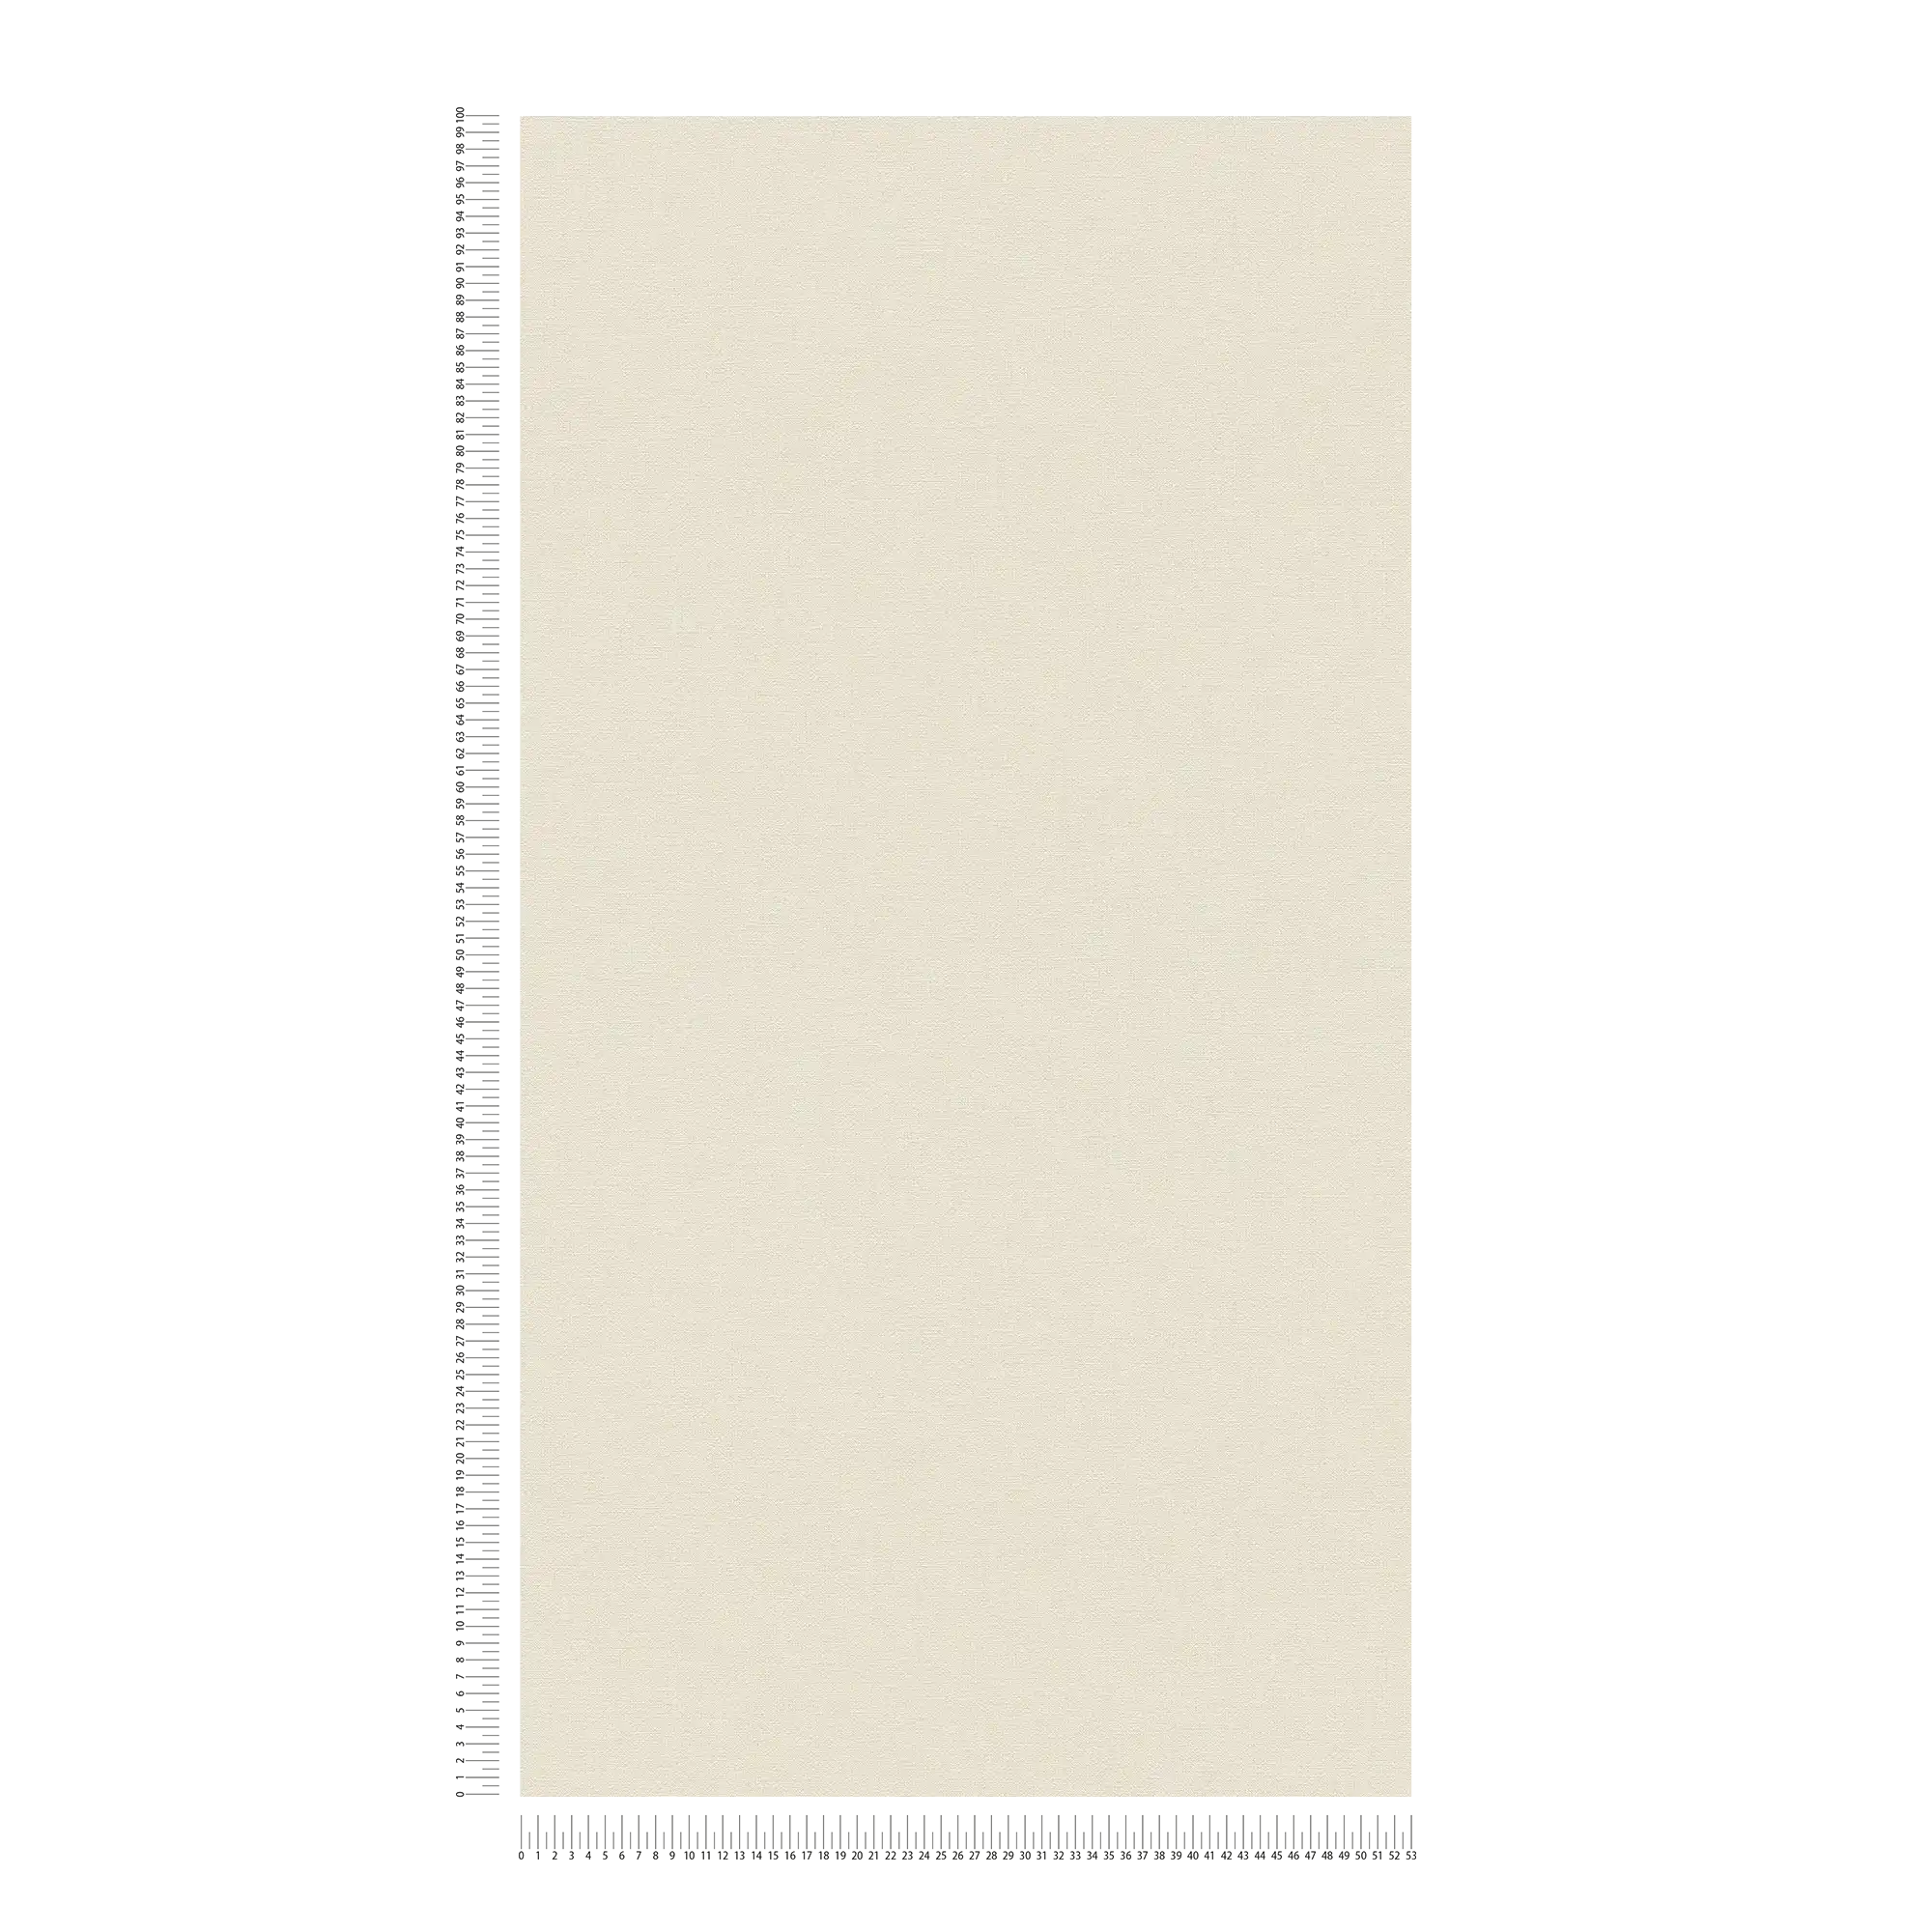             Papier peint uni sans PVC, aspect lin - beige, blanc
        